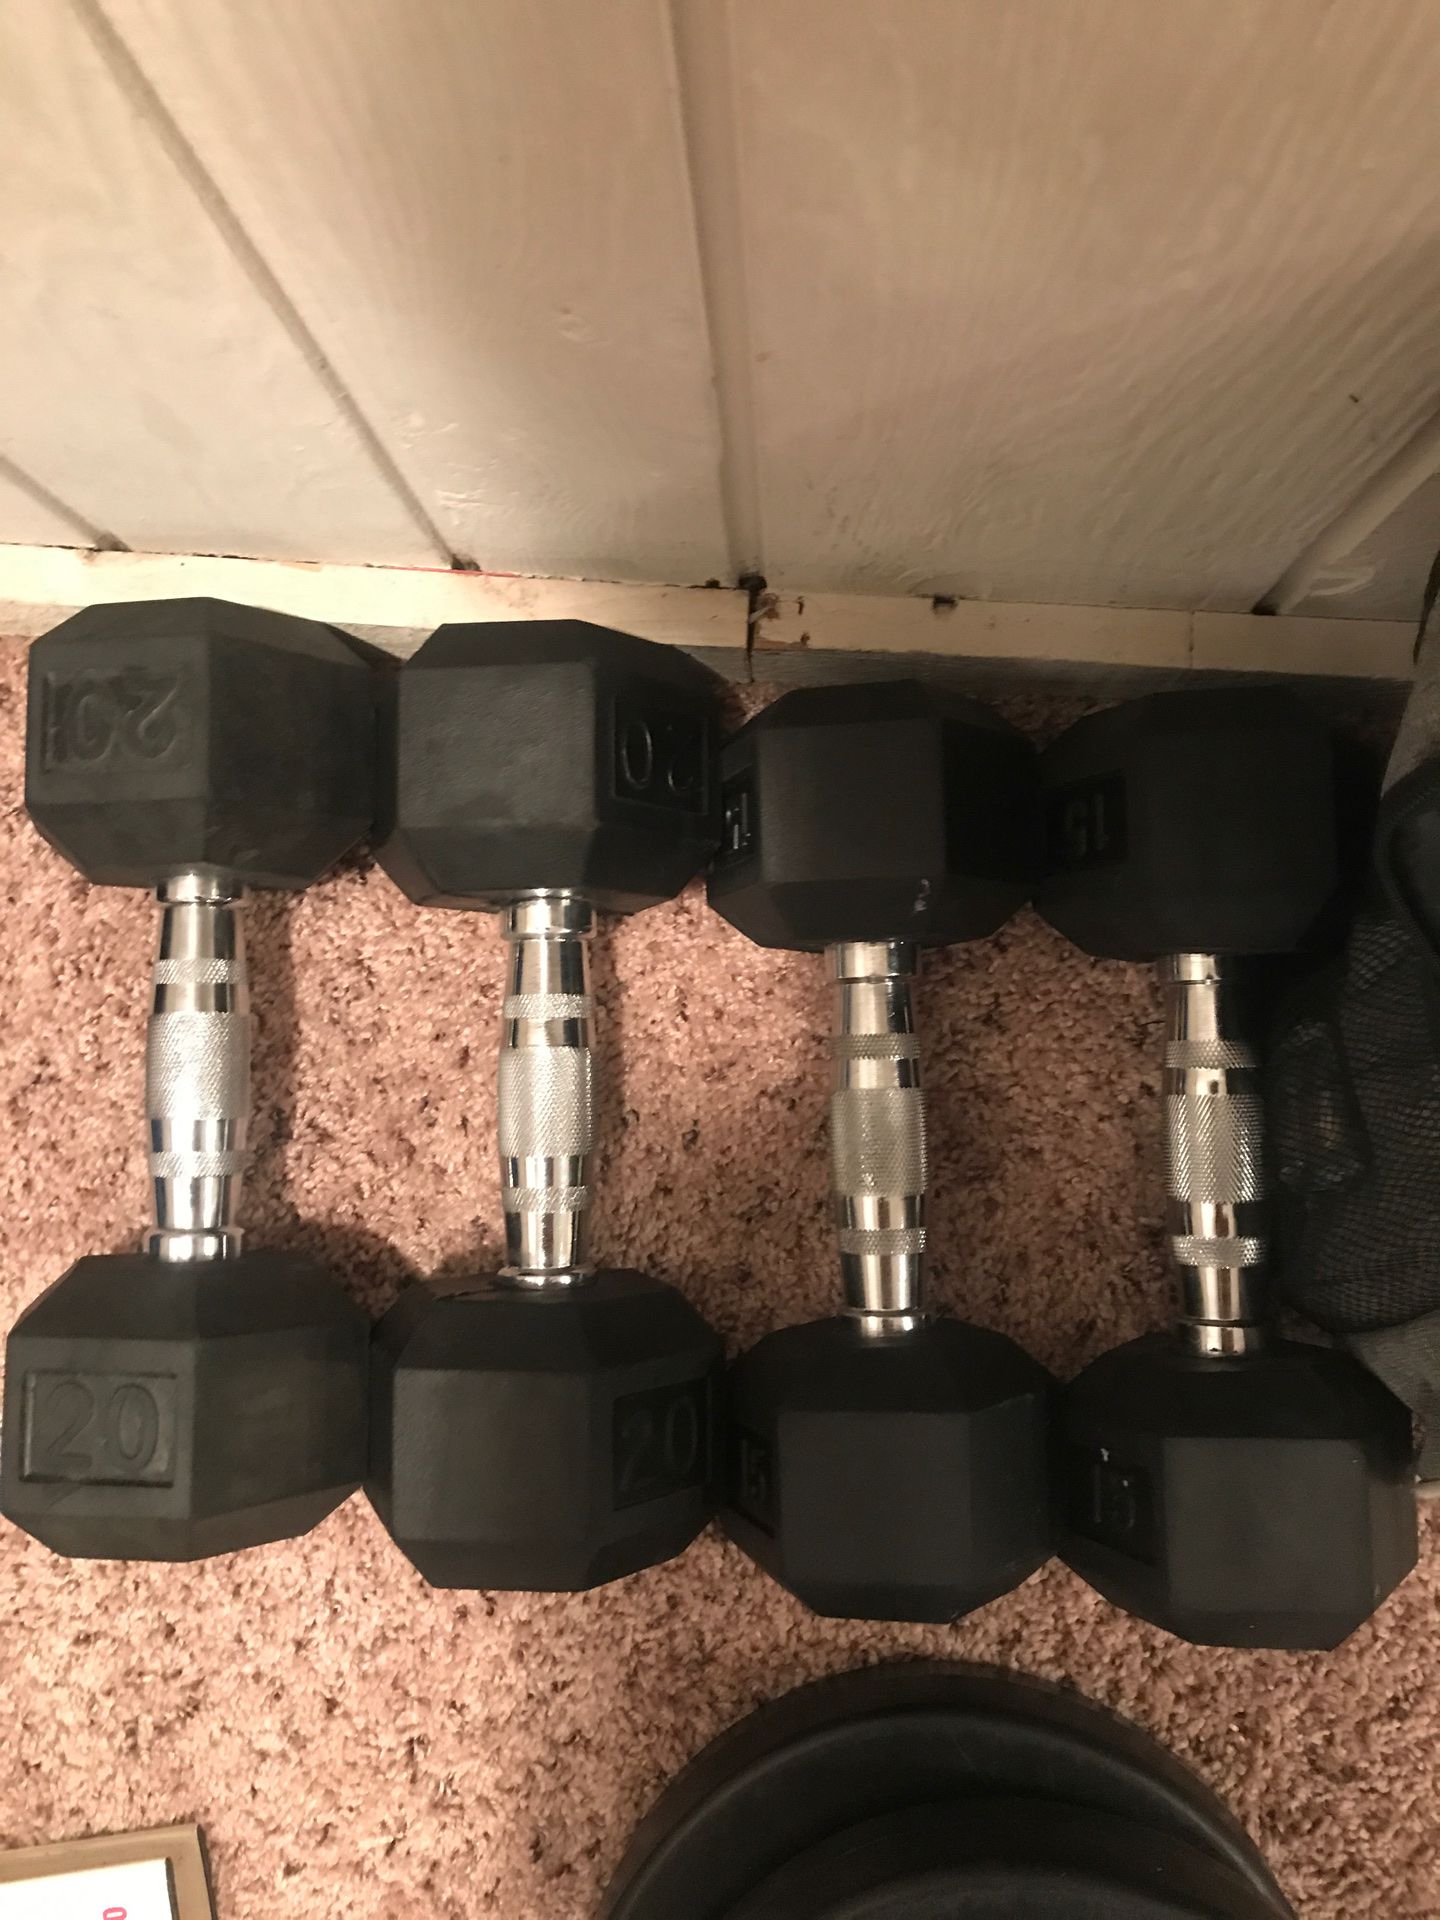 4 weights